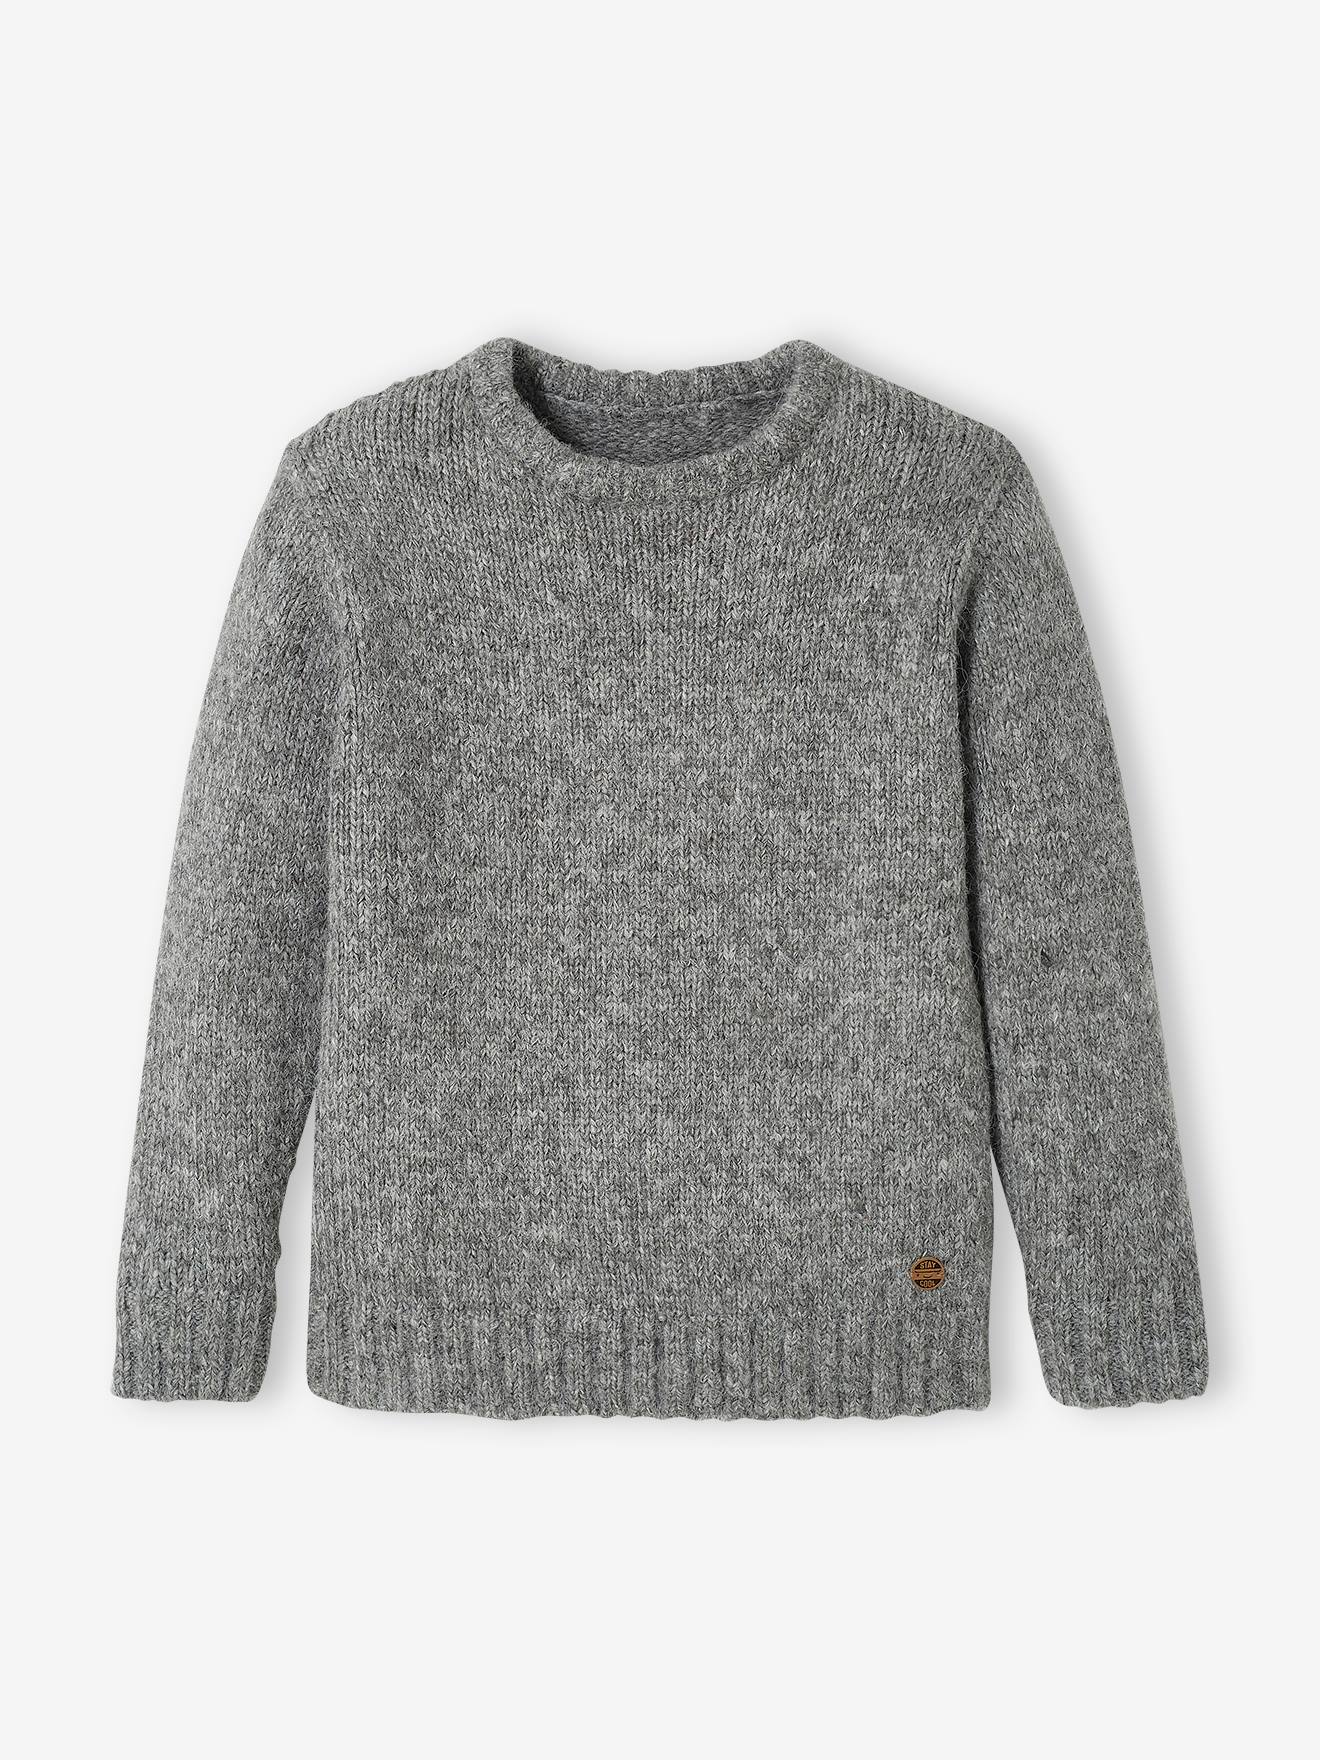 Jongenstrui van luchtig getwijnd tricot gemengd grijs net als de kleur